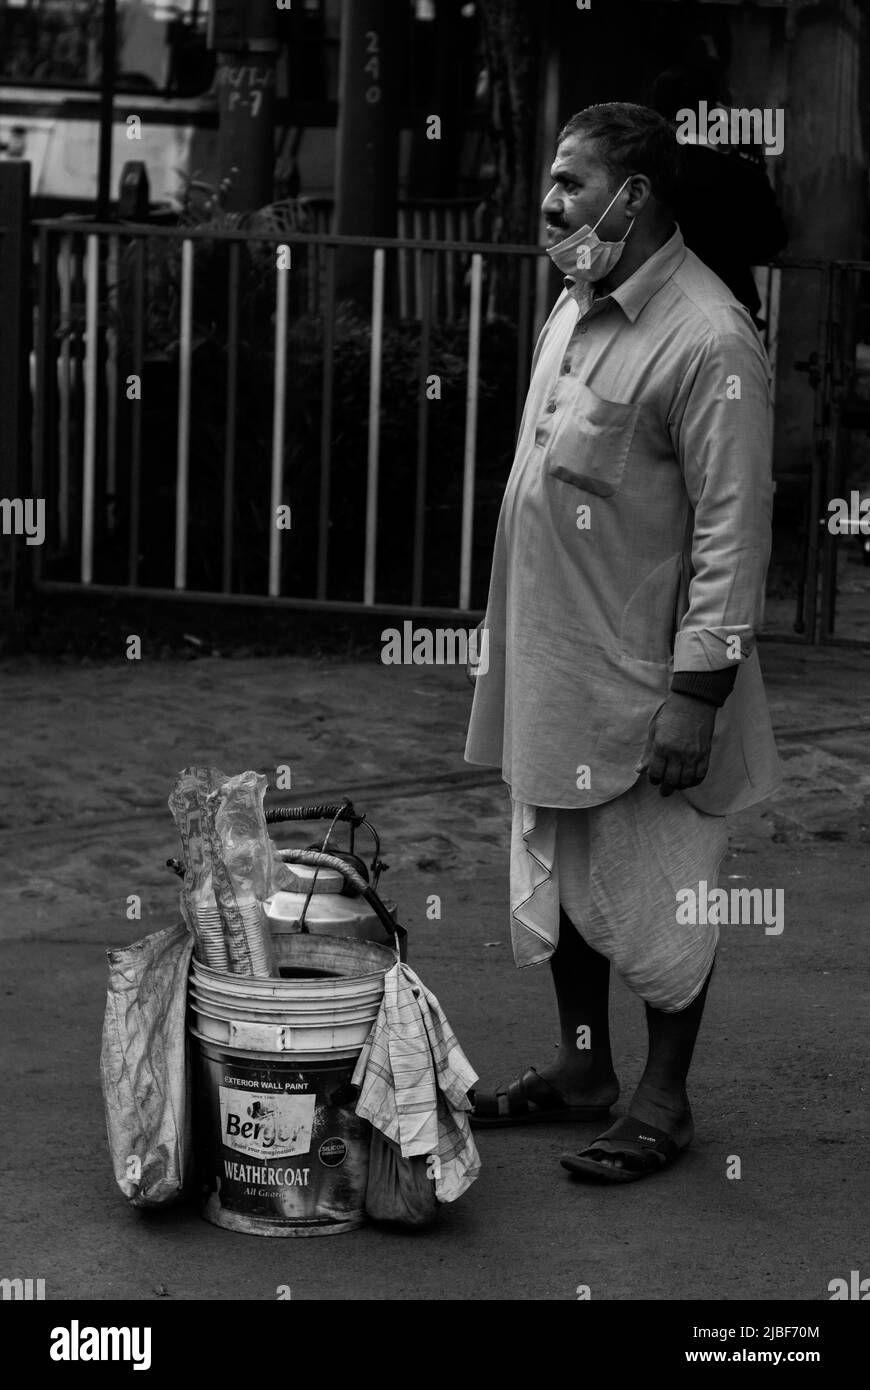 Kalkutta, Indien - 2. Januar 2022: Ein Teesverkäufer, der traditionelle indische Dhoti trägt, steht und wartet auf Kunden. Ein Eimer mit Teekocher und Stockfoto